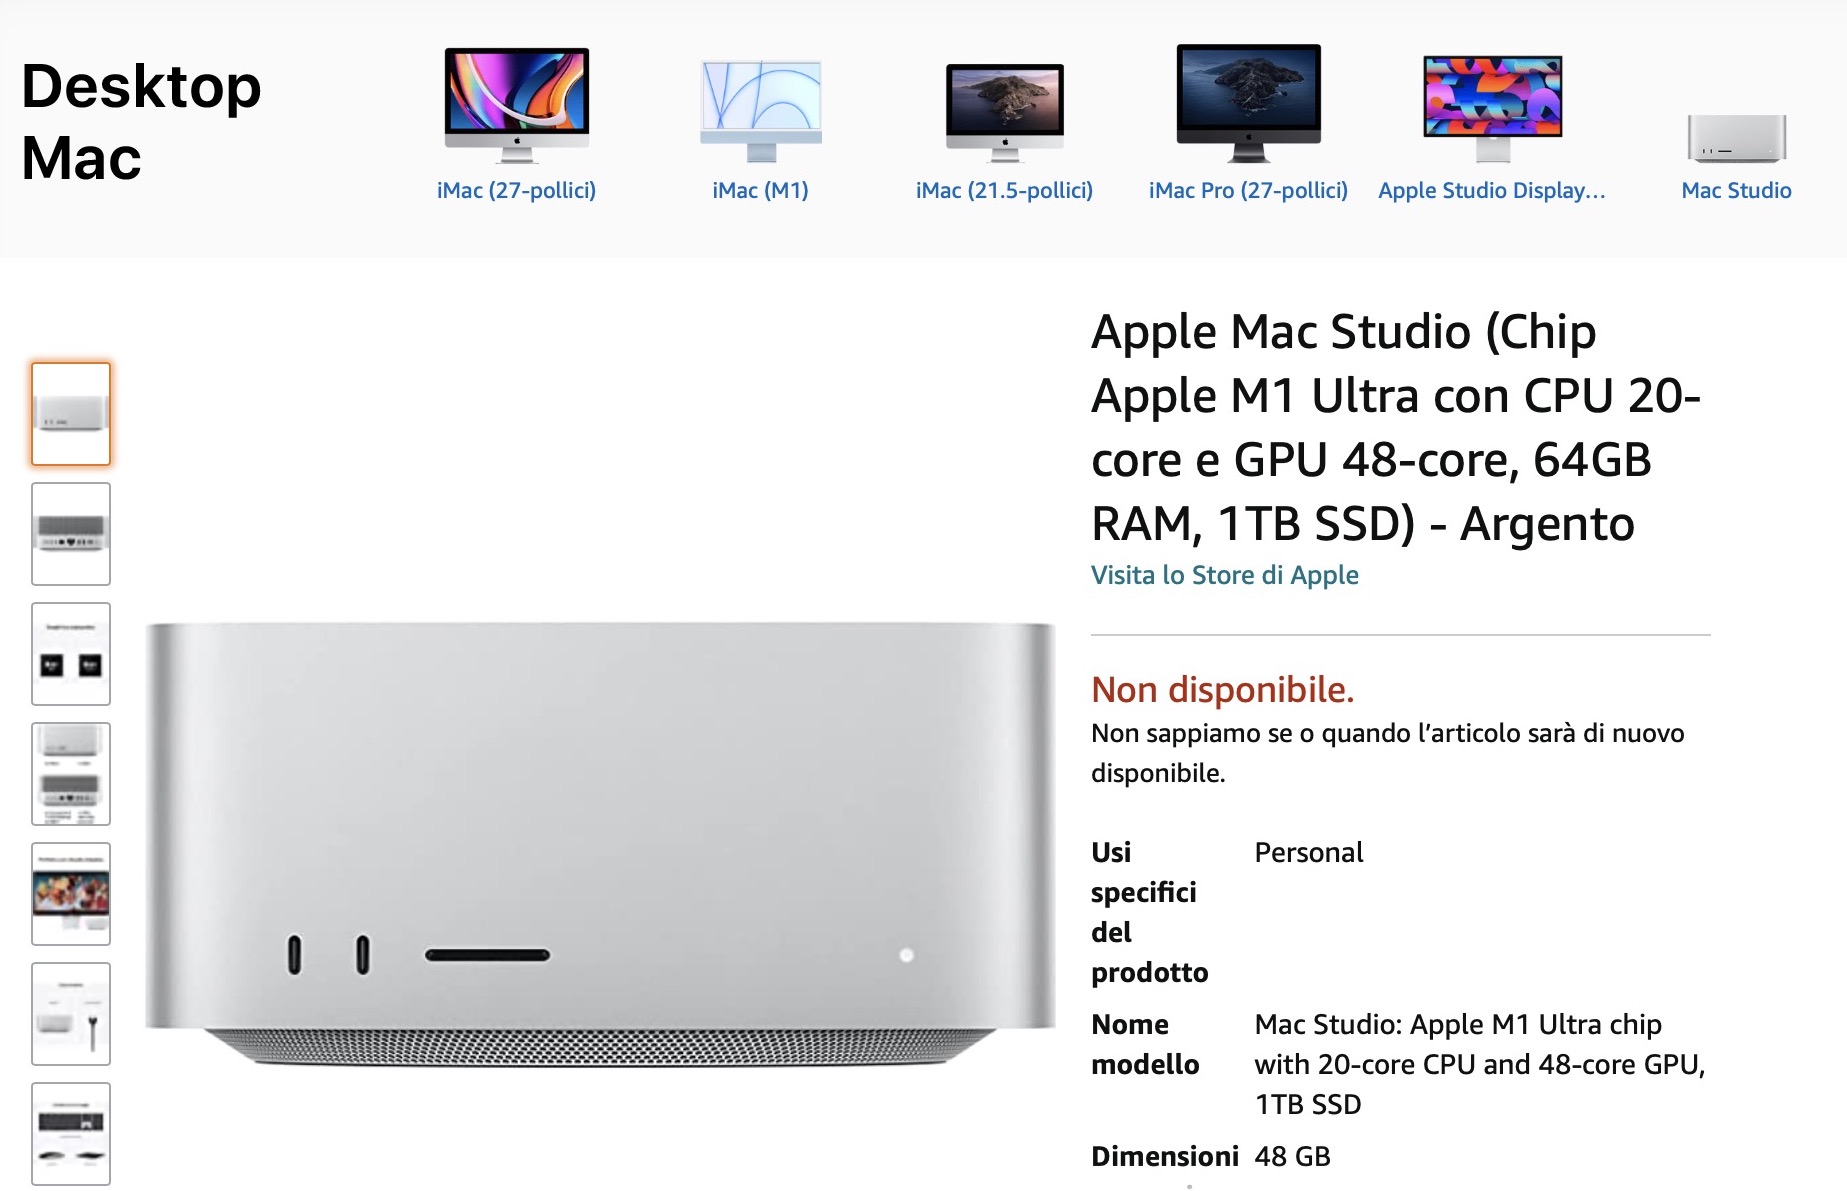 Mac Studio sarà disponibile su Amazon? 